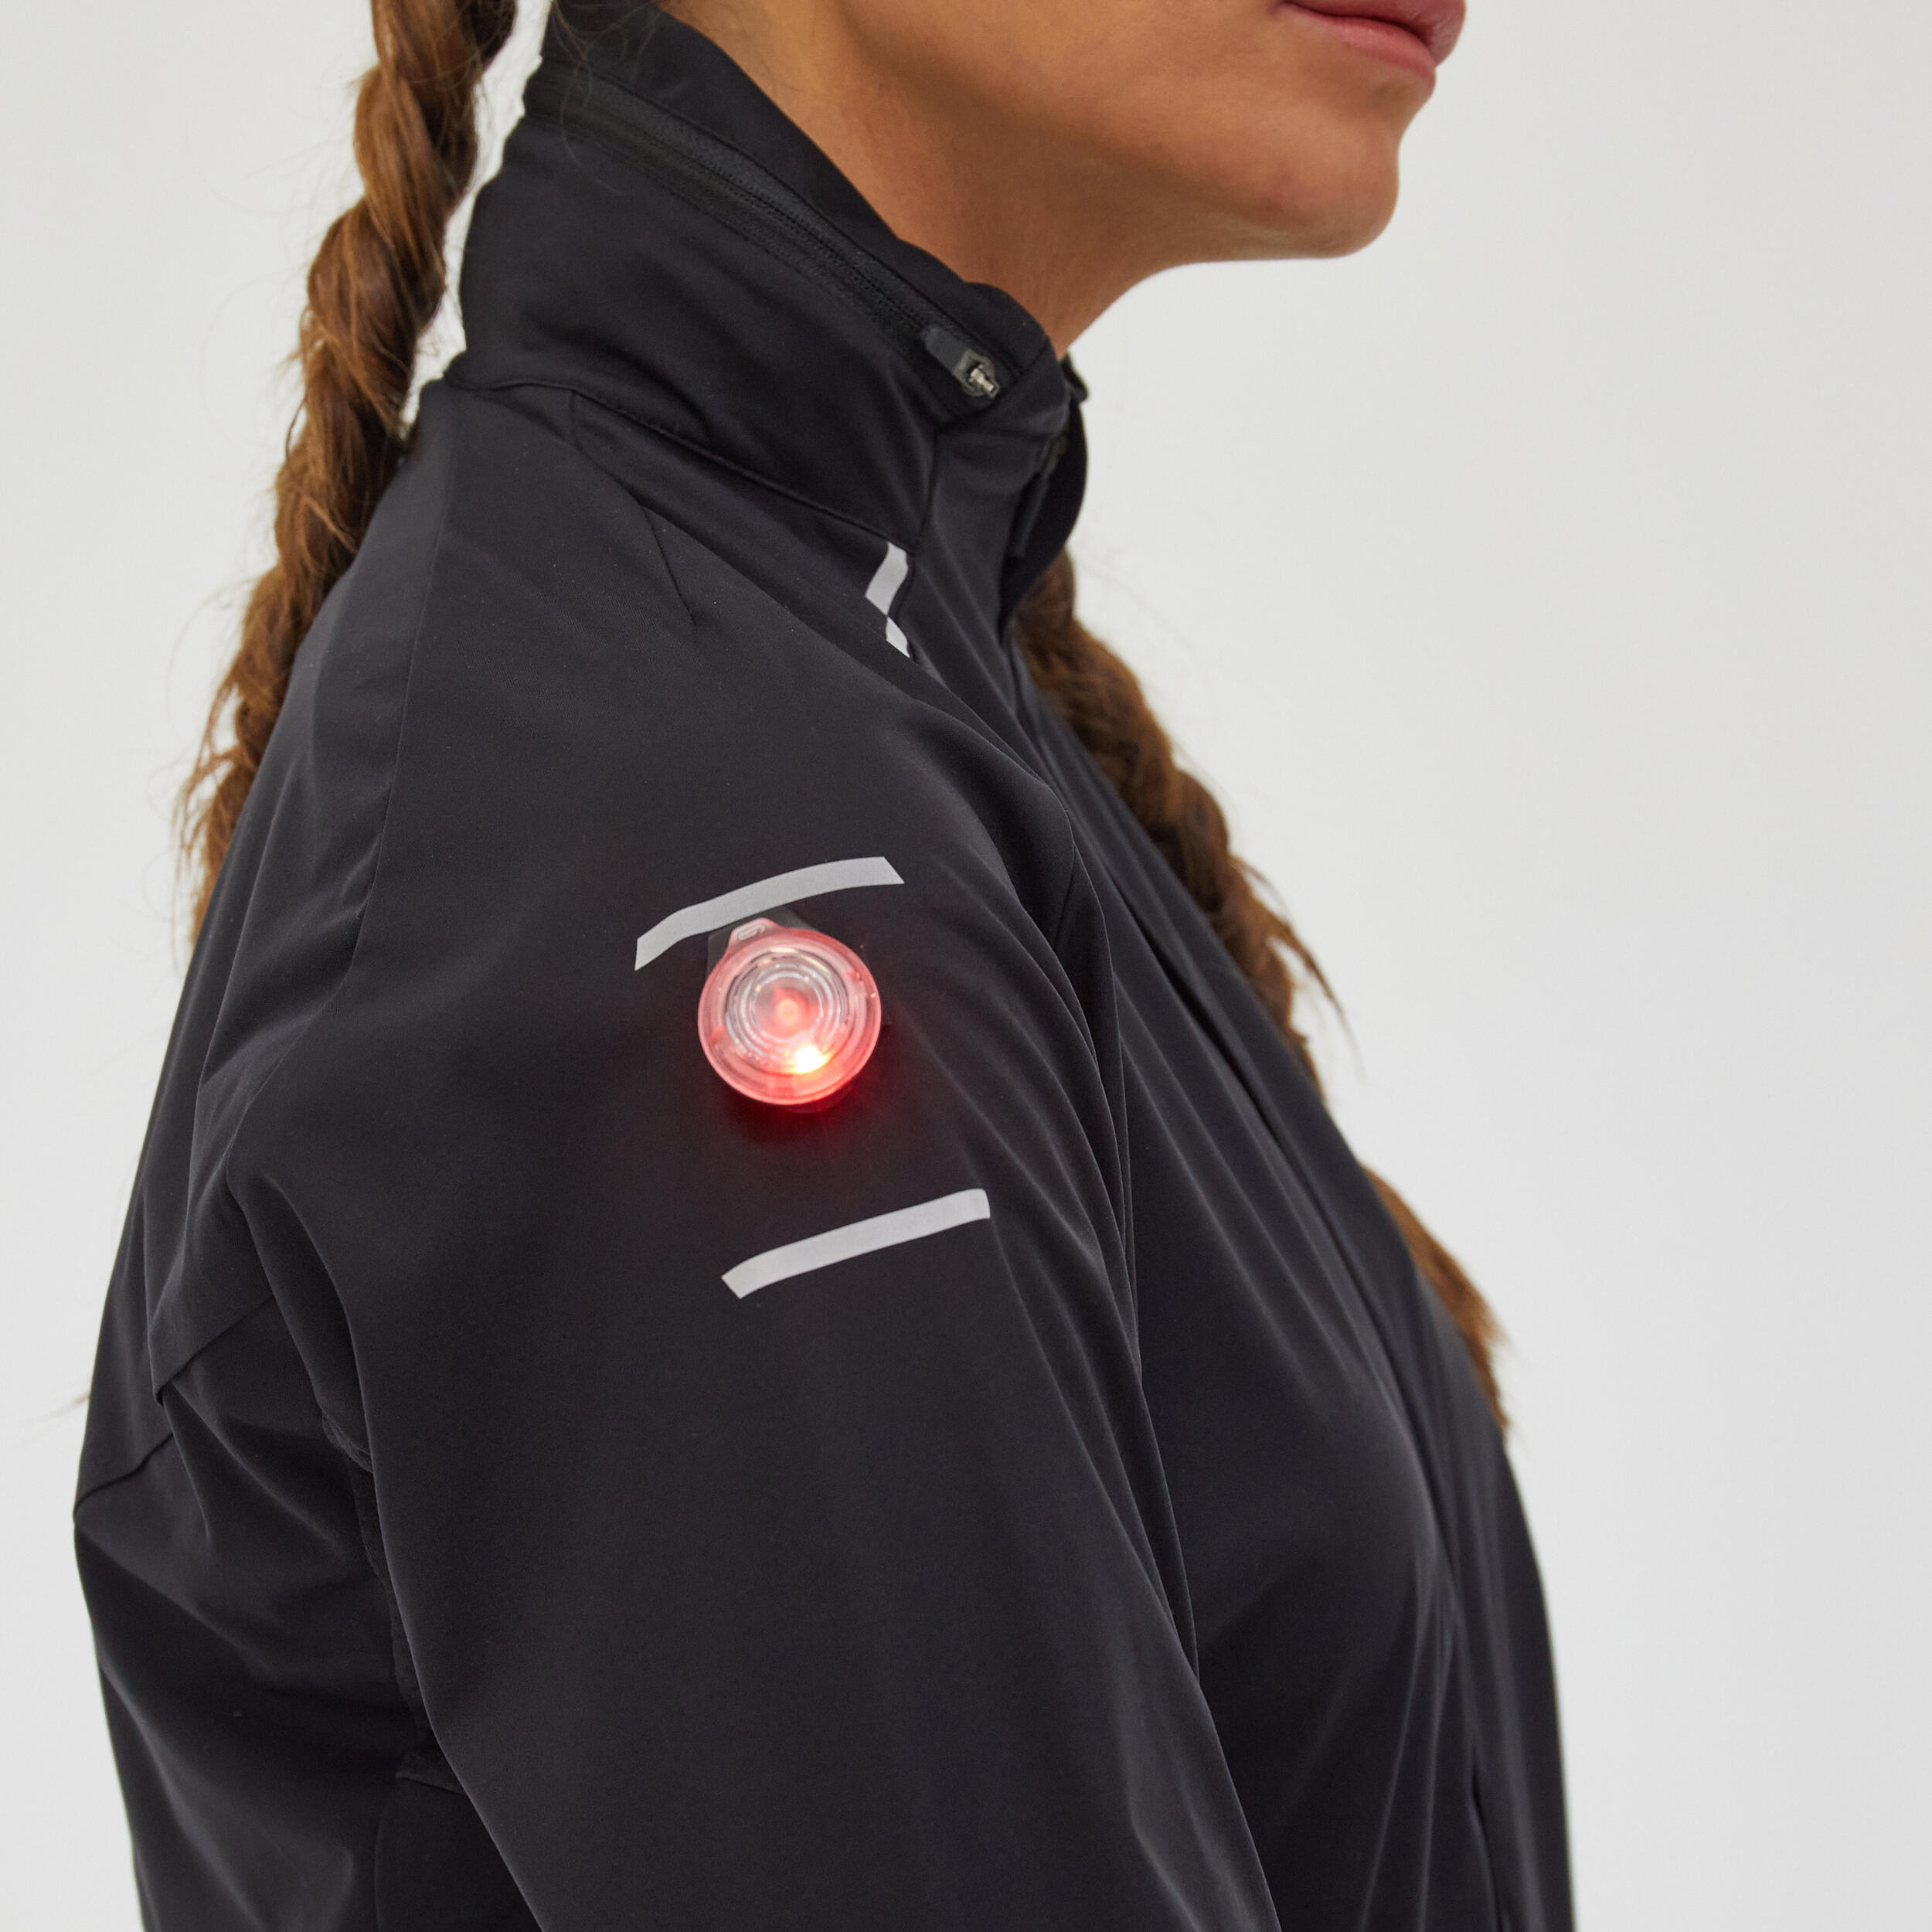 Warm Regul Women's Running Water Repellent Windproof Jacket - Black 10/12